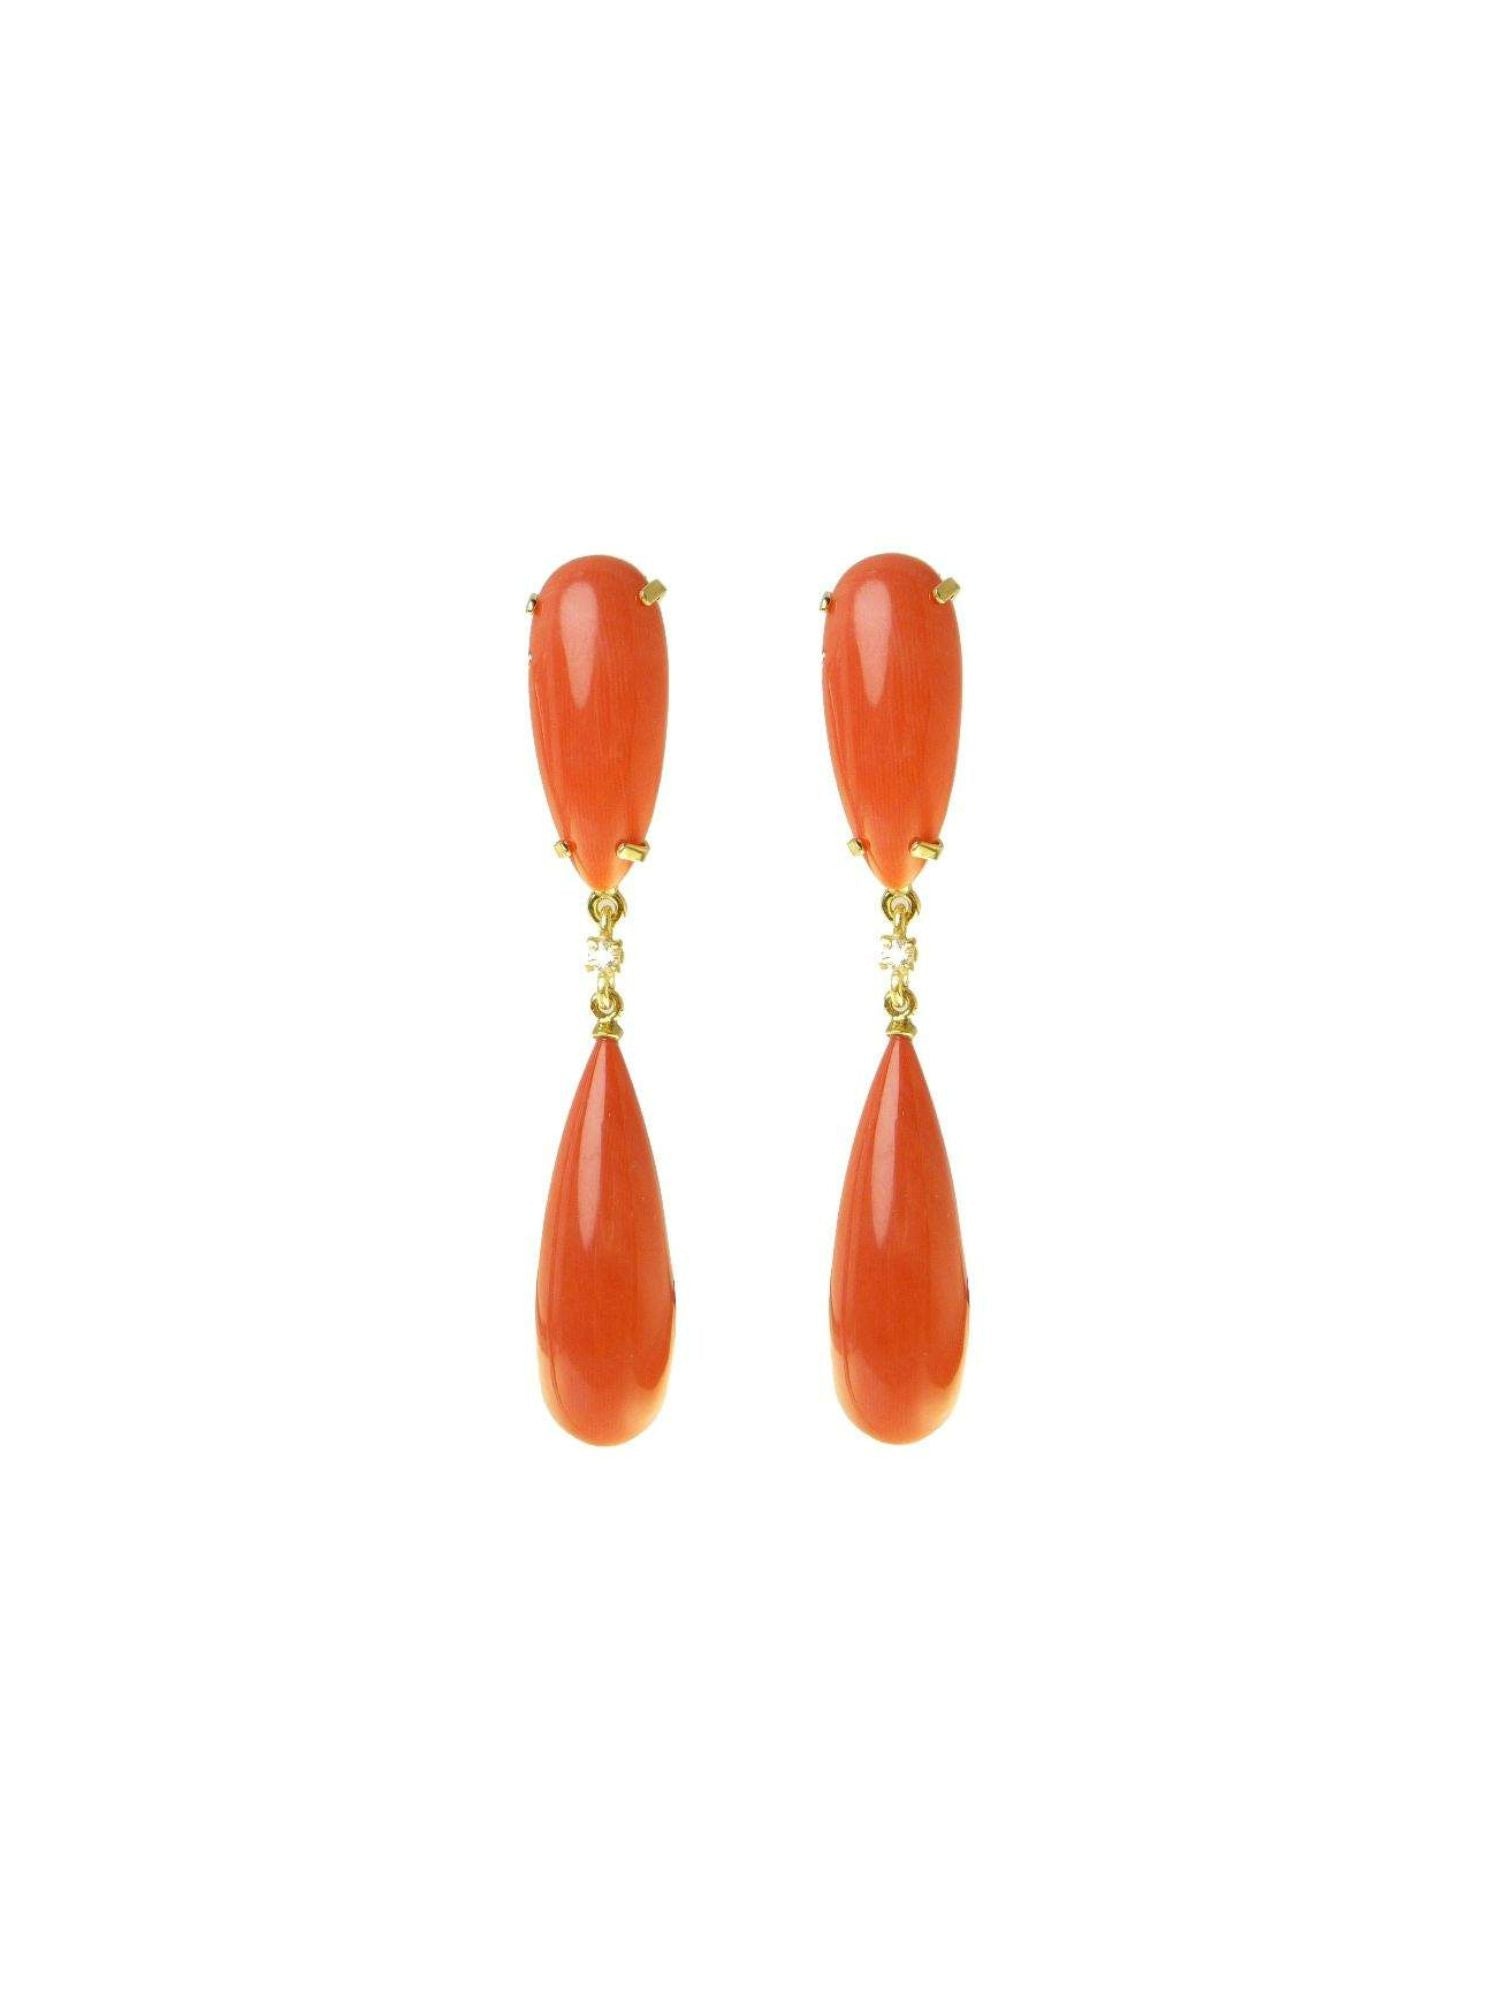 Coral & Diamond Earrings - K.S. Sze & Sons